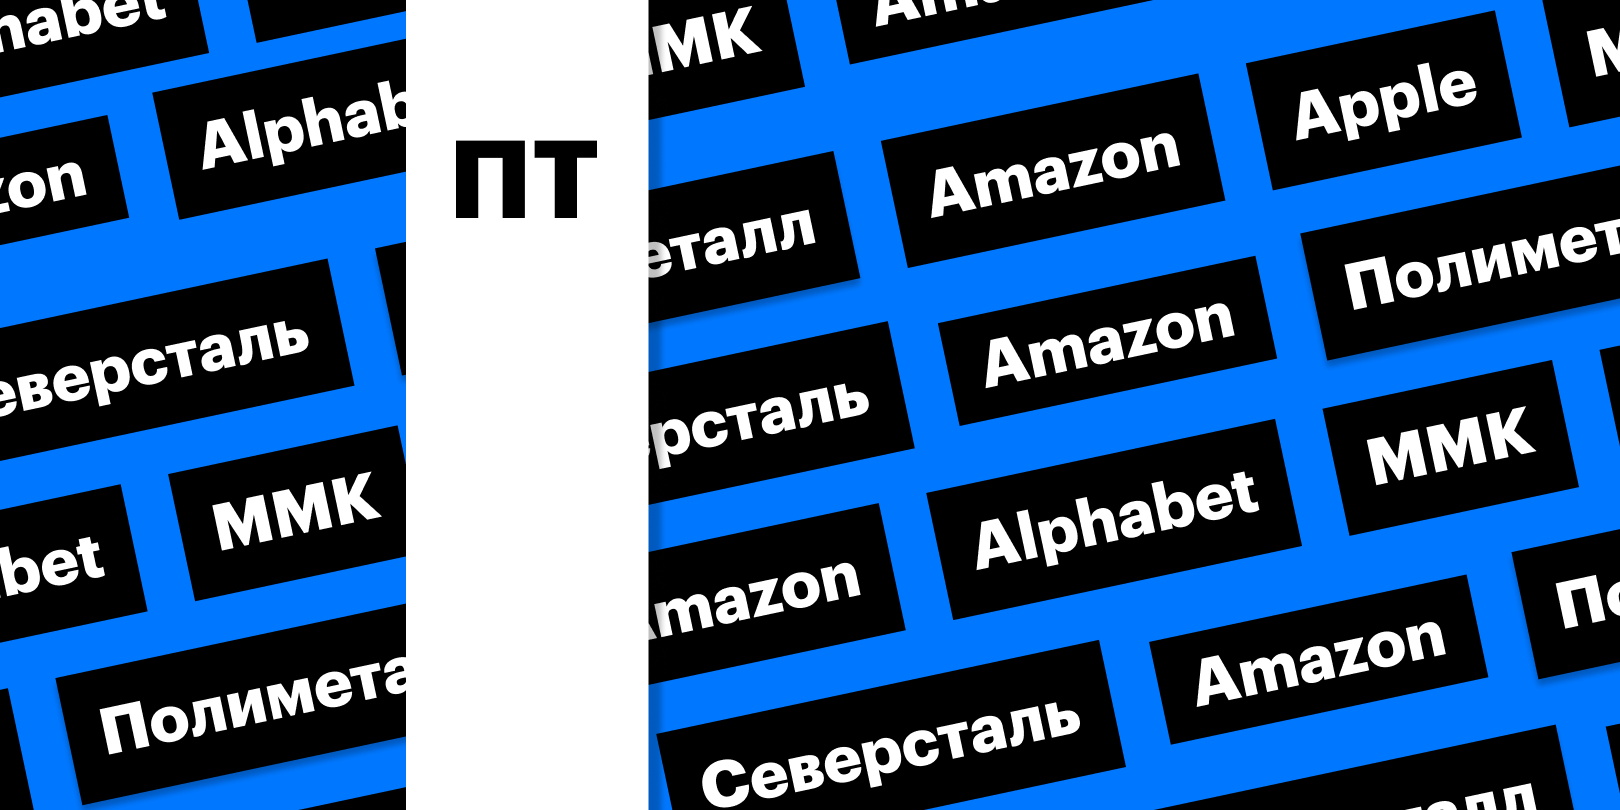 Российские сталевары, отчетность Apple, Amazon, Alphabet: дайджест